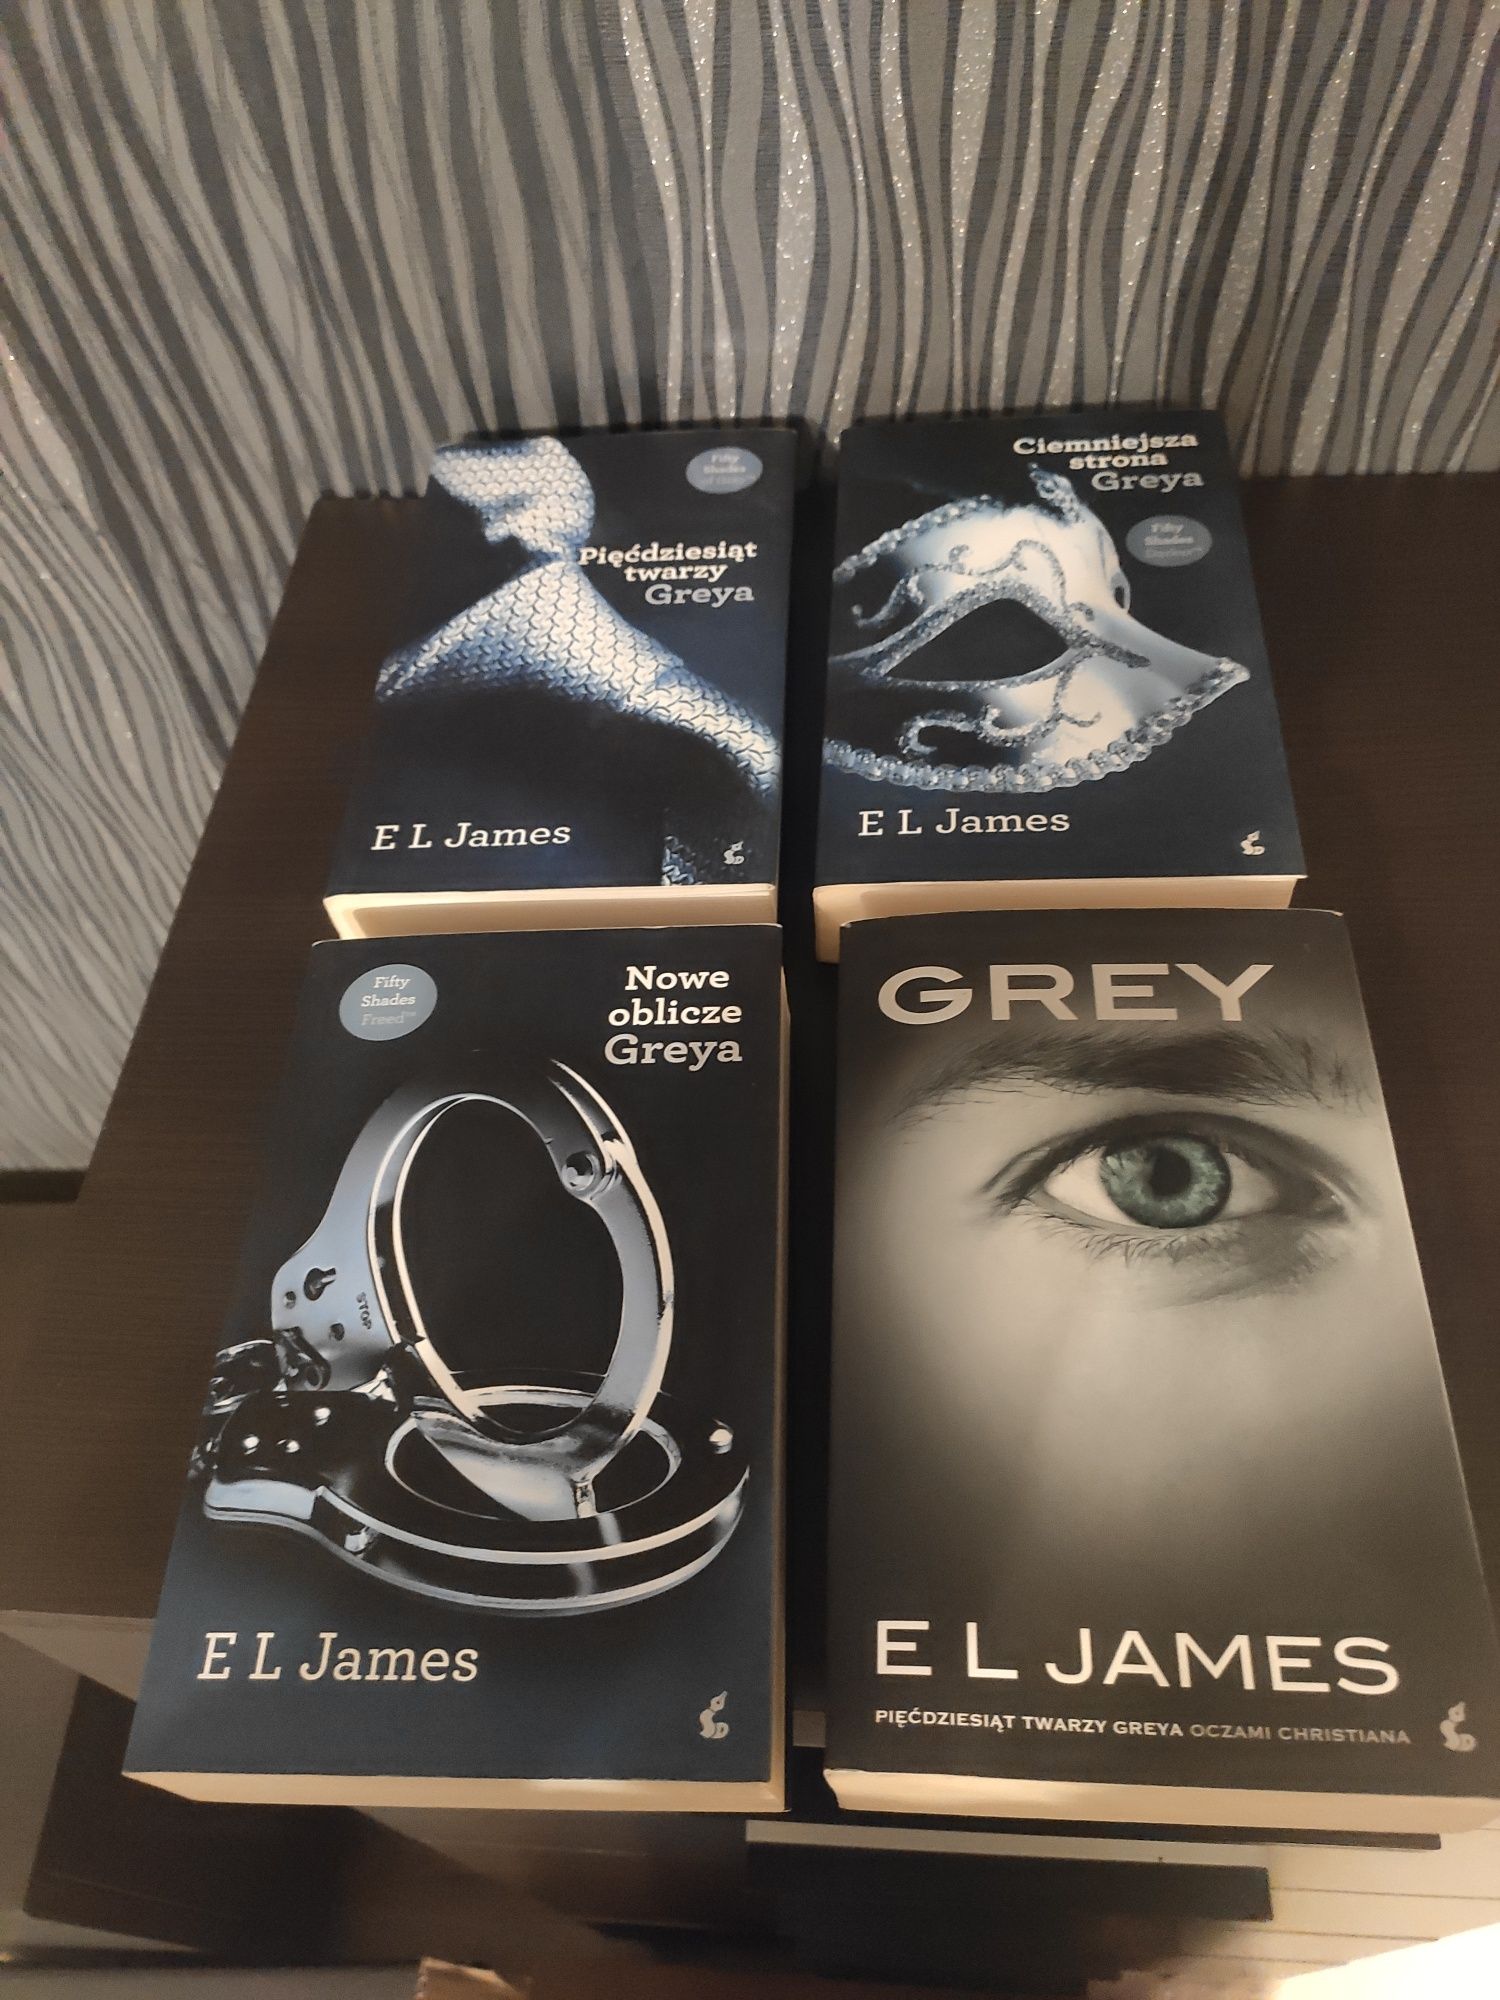 Pakiet książek "Pięćdziesiąt twarzy Greya" E L James